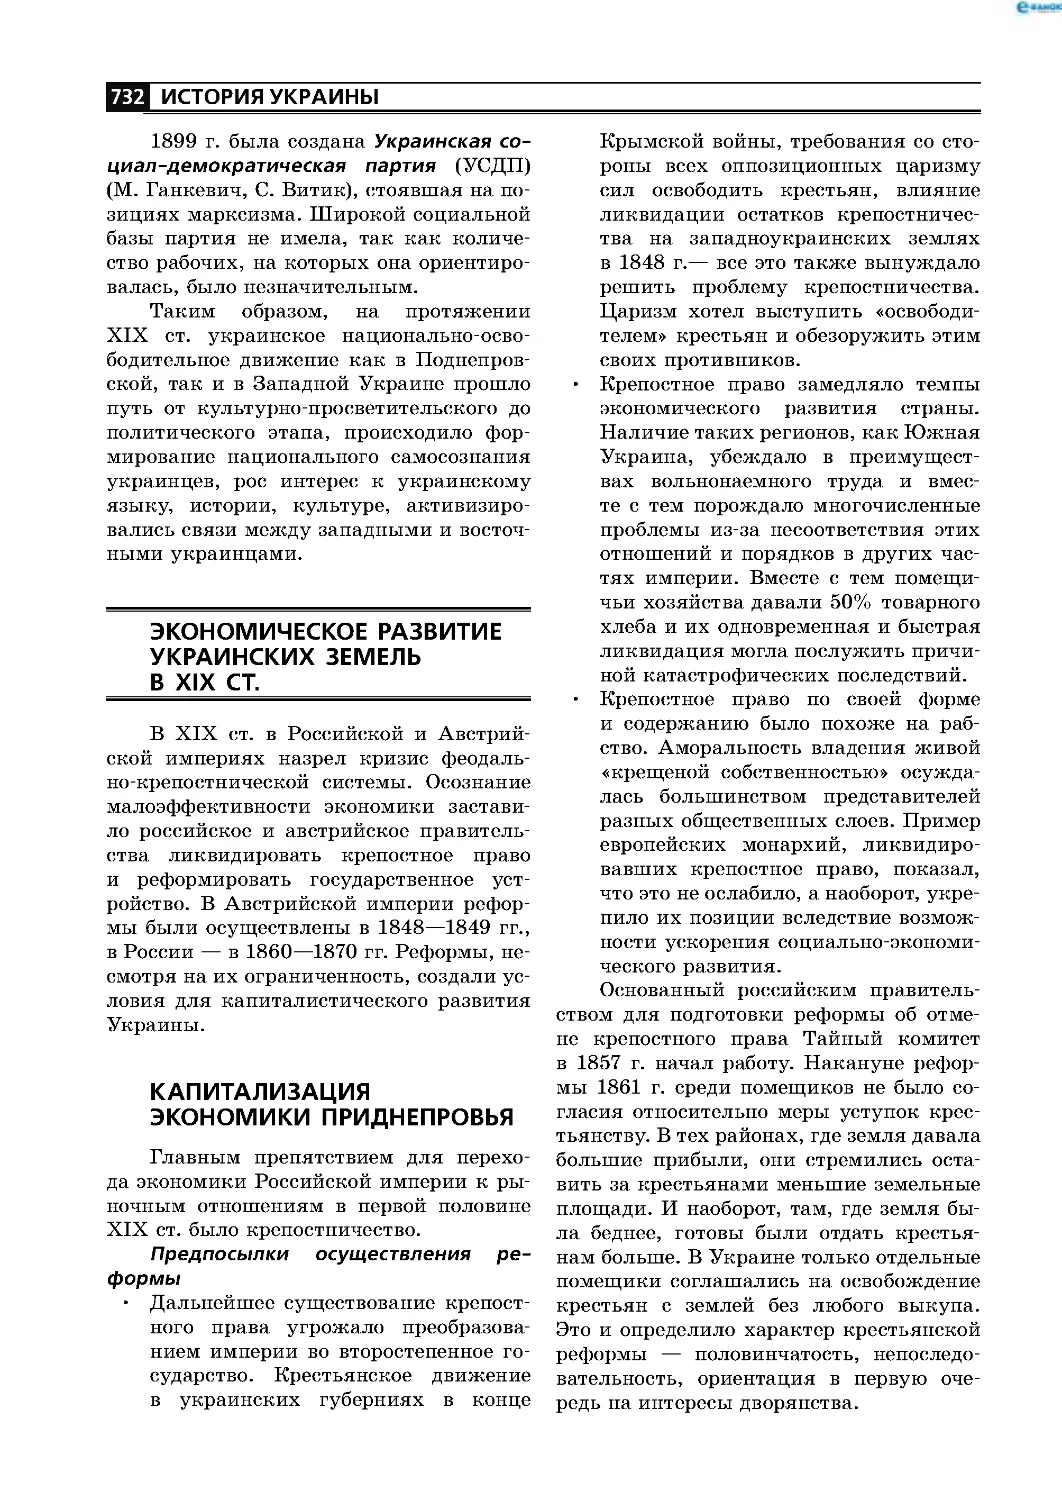 Экономическое развитие украинских земель в XIX ст